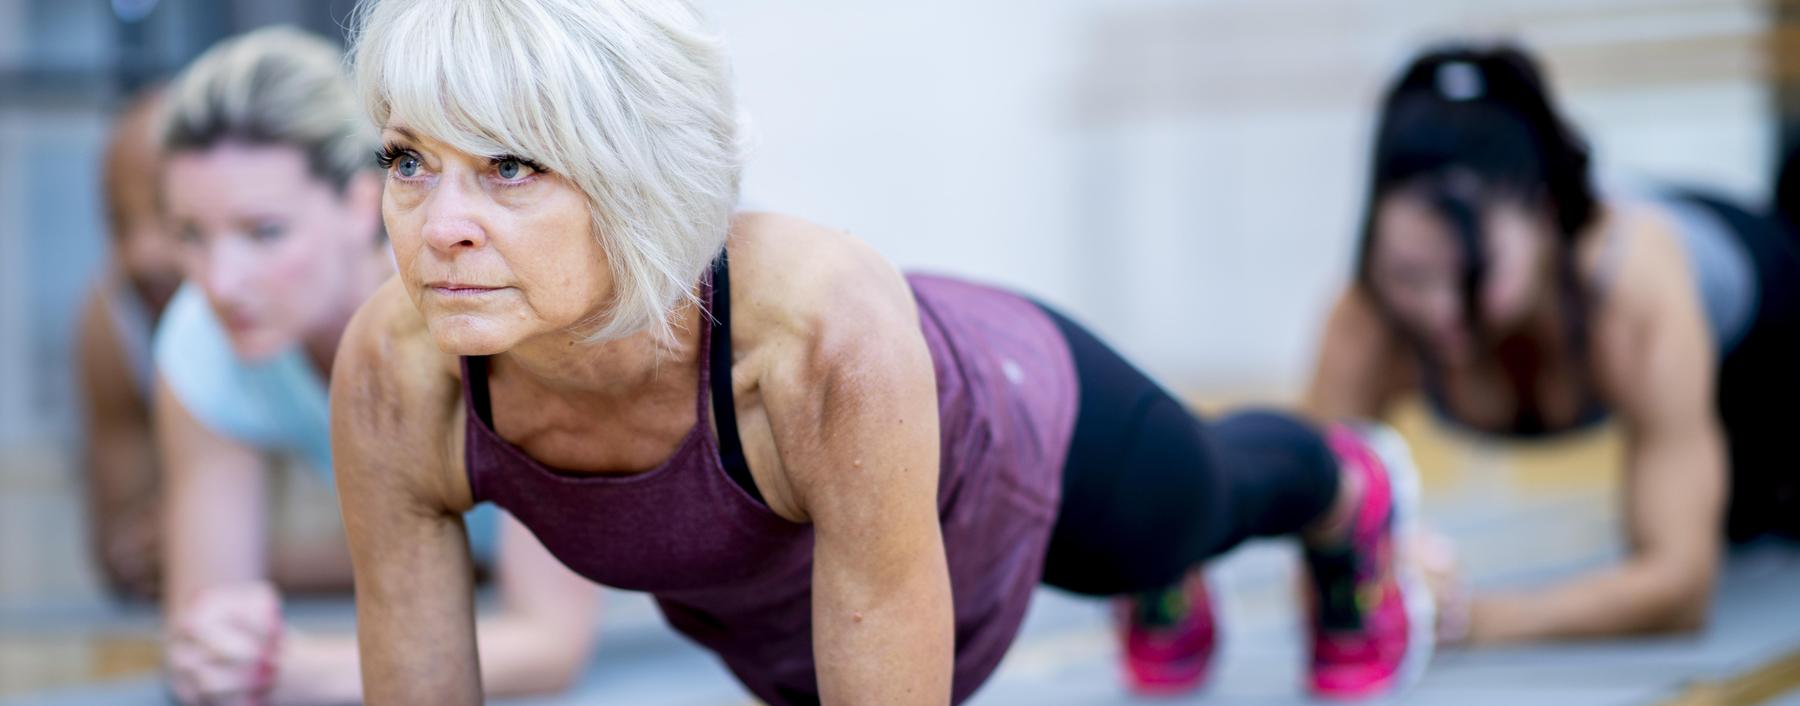 Vom Planken bis zum Stemmen von Langhanteln: Je älter man wird, desto stärker profitiert man von wachsender Muskelkraft.